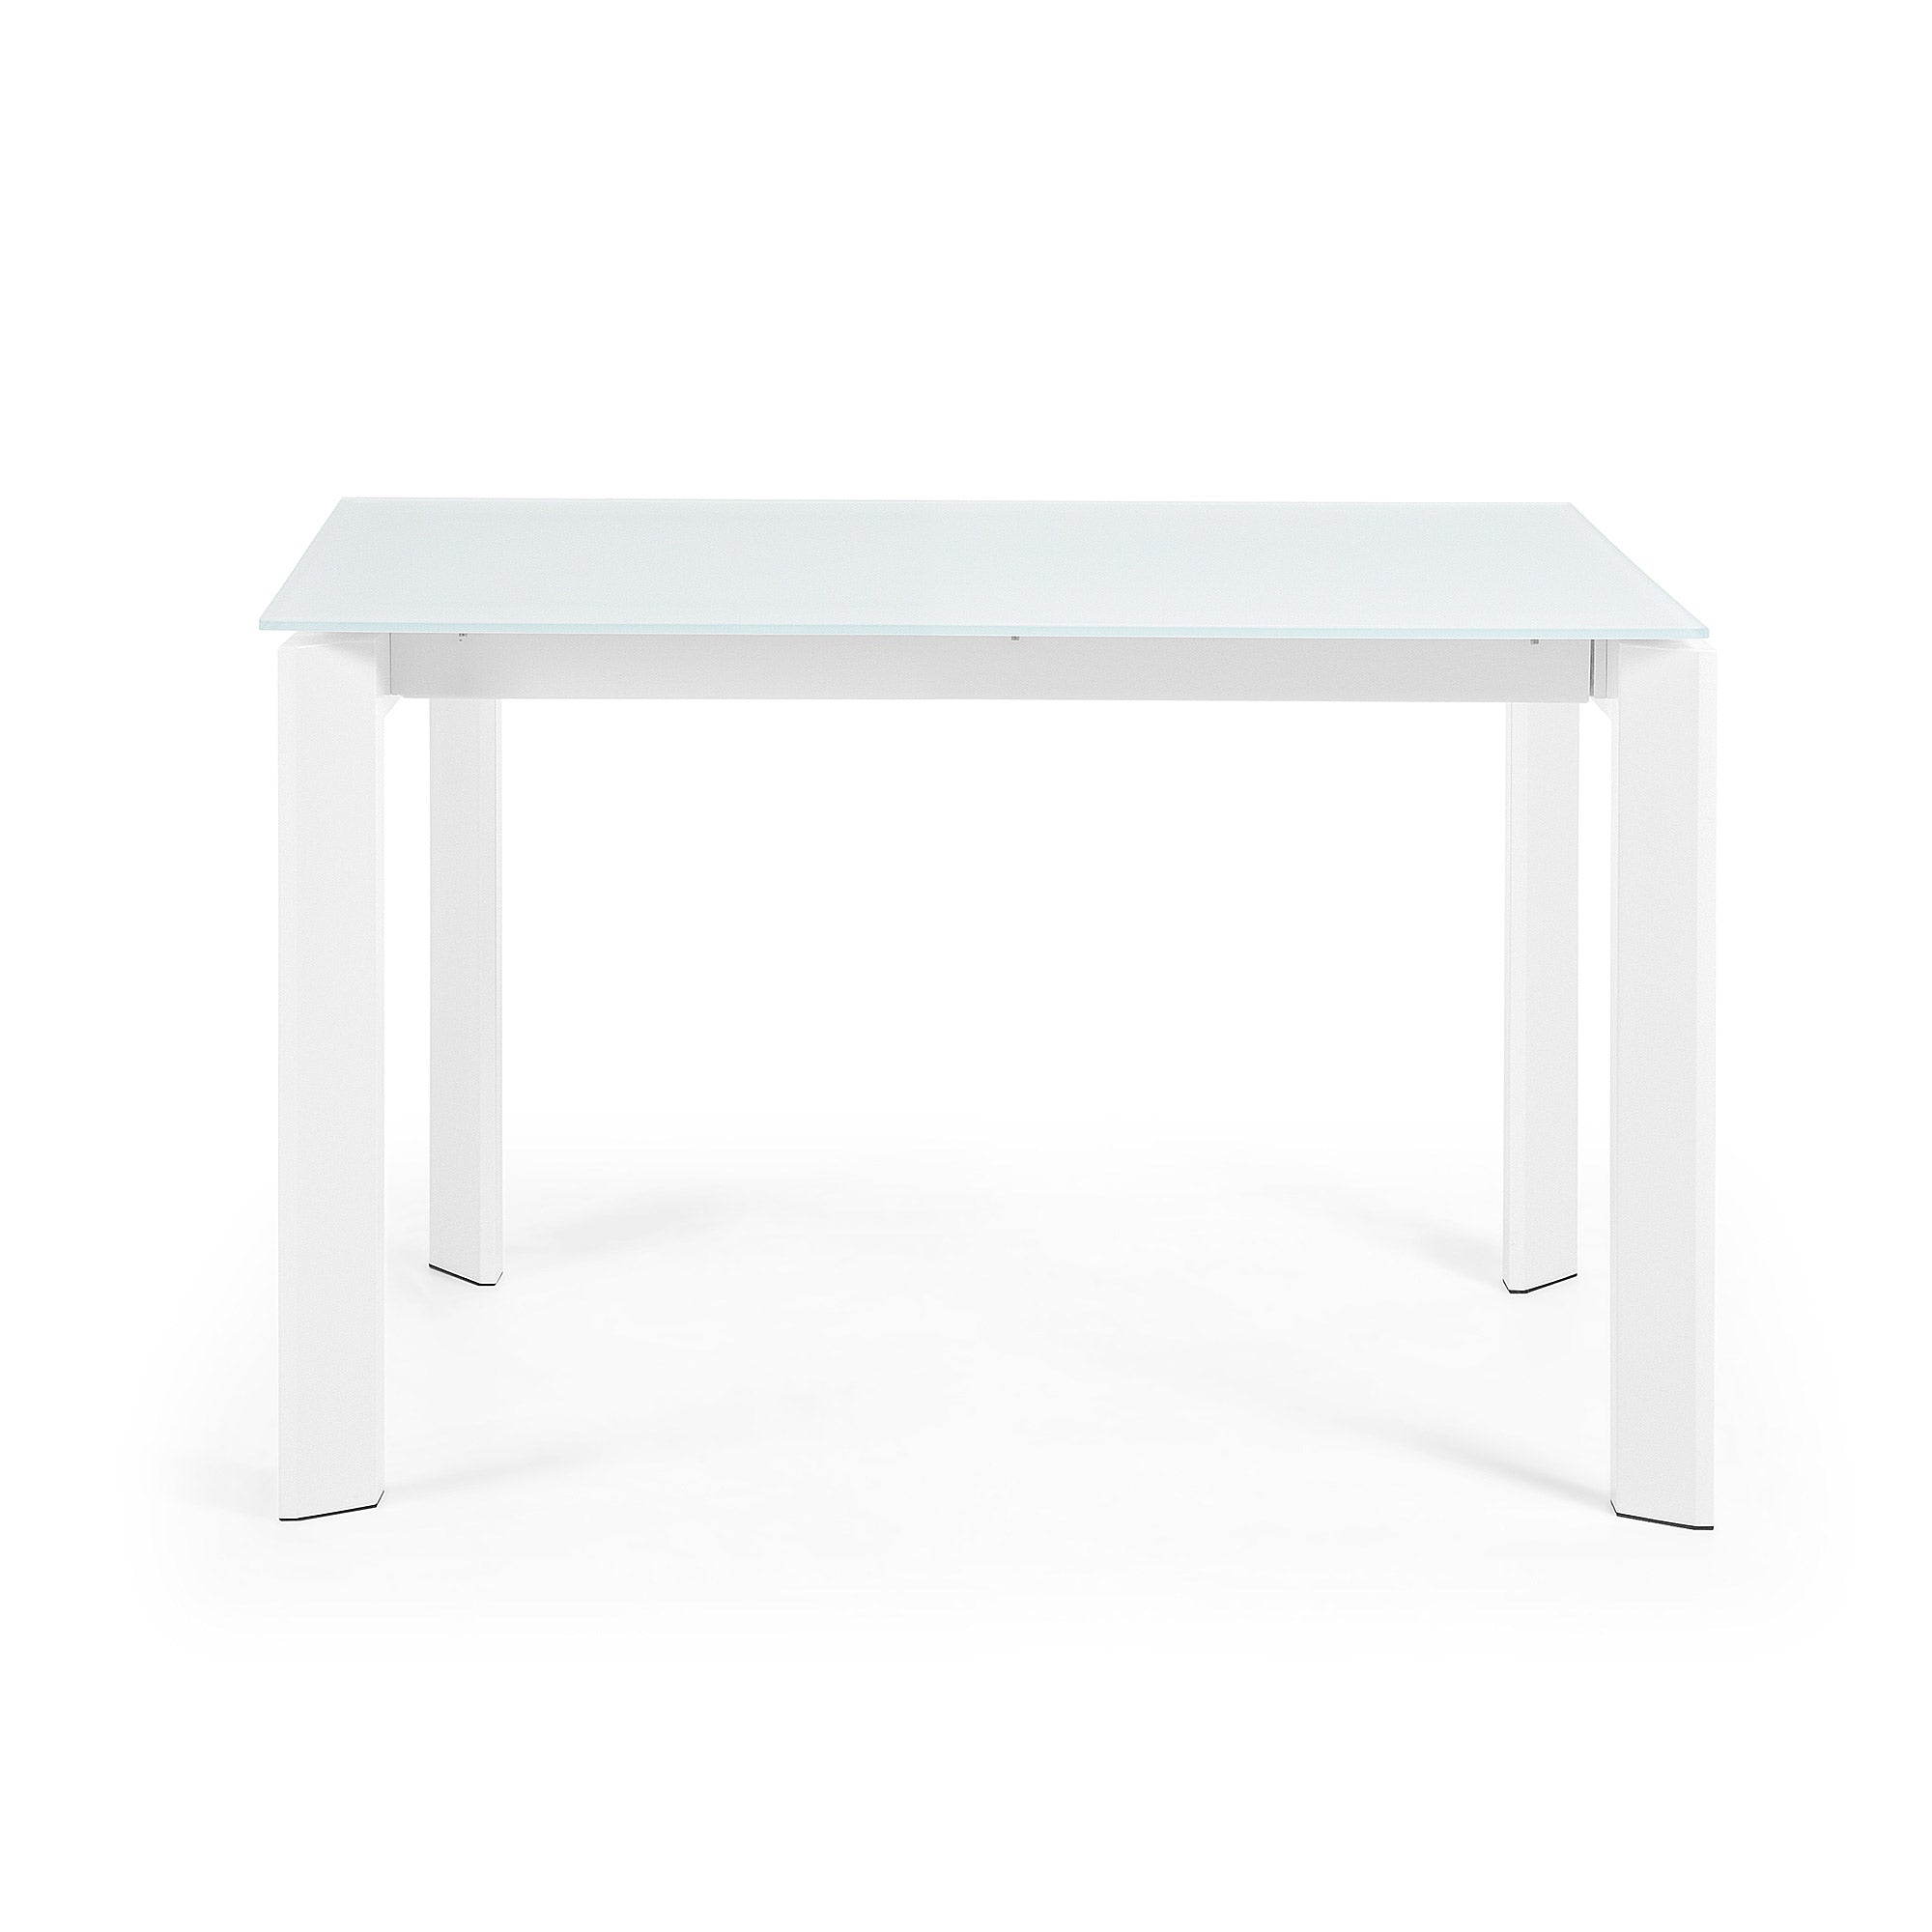 Axis fehér üvegből készült kihúzható asztal fehér acéllábakkal 120 (180) cm